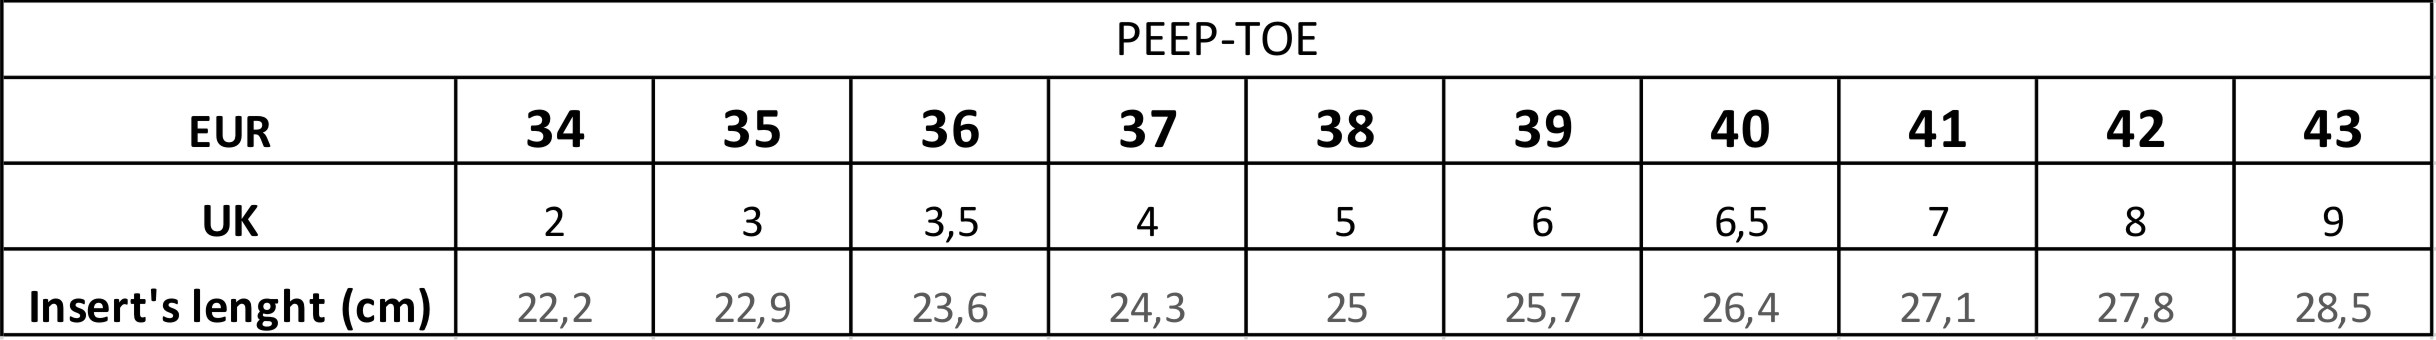 peep toe table